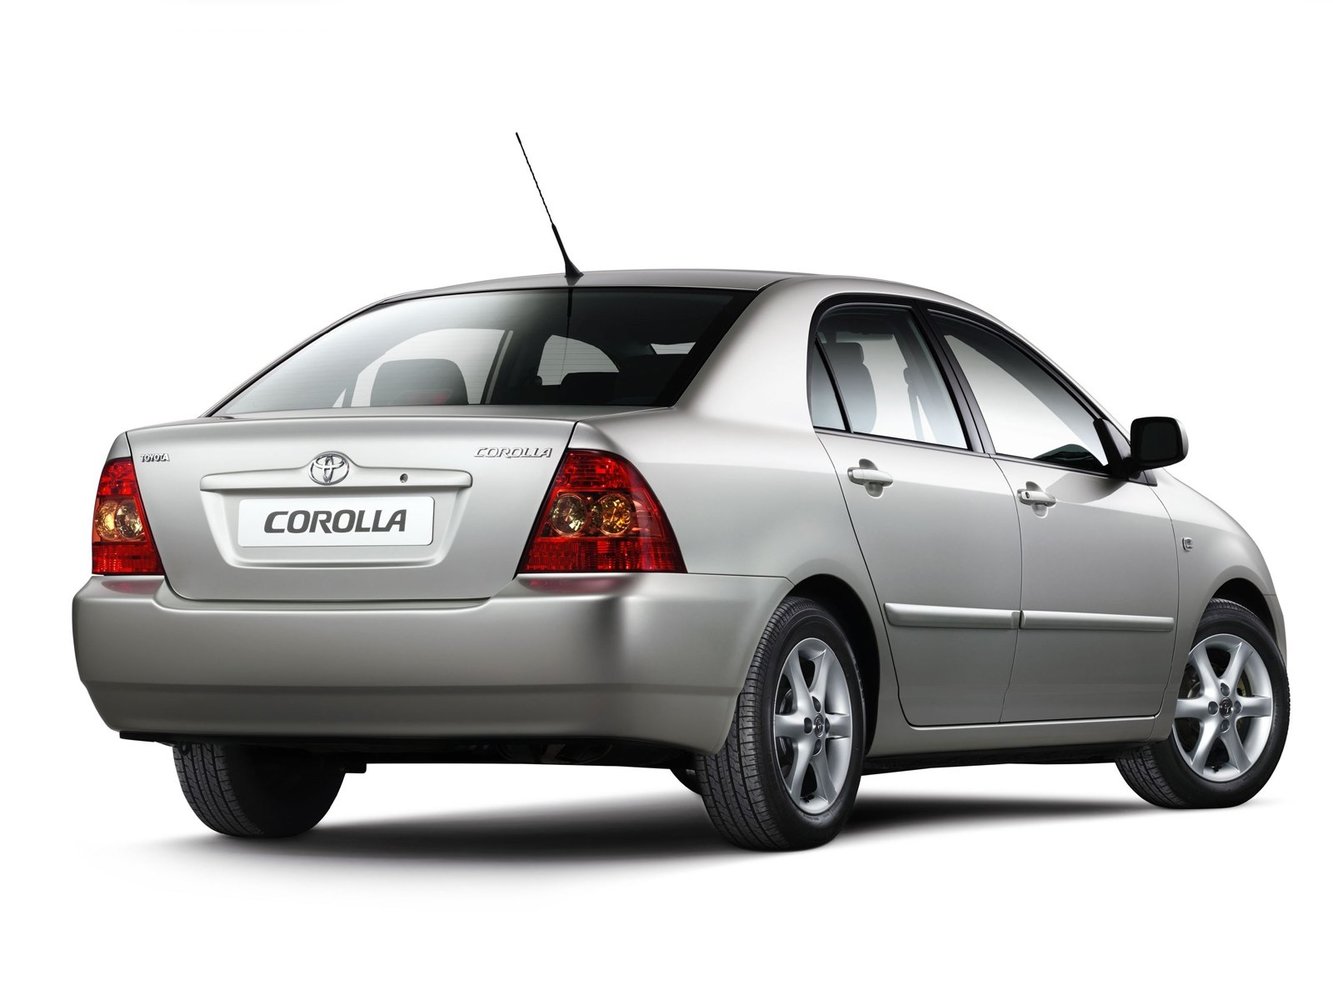 седан Toyota Corolla 2004 - 2007г выпуска модификация 1.3 AT (88 л.с.)